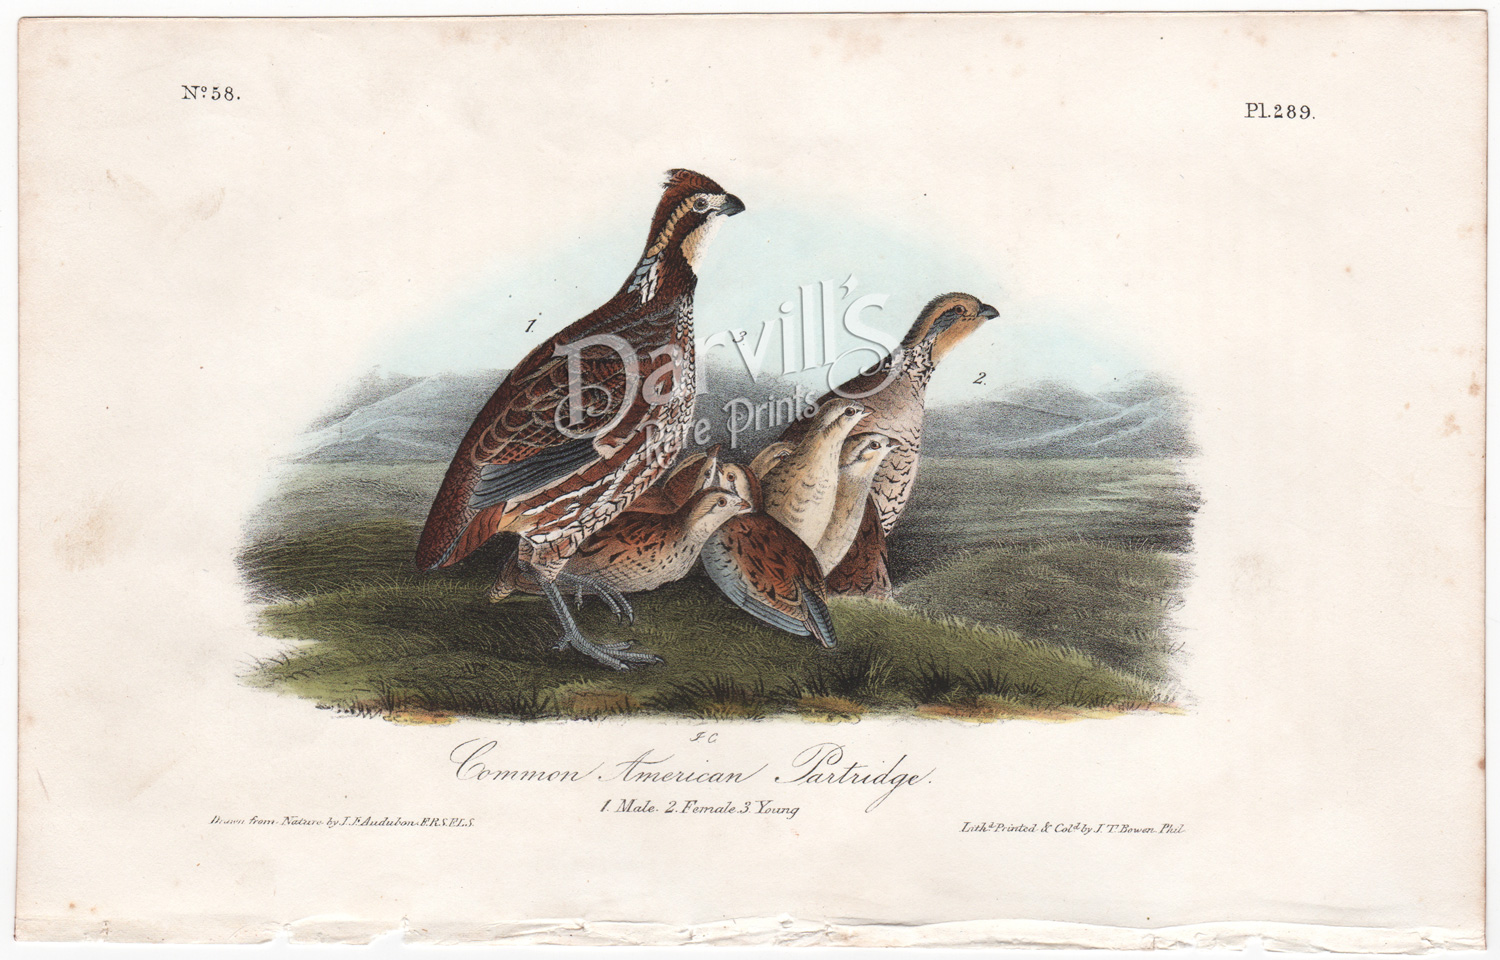 Common American Partridge